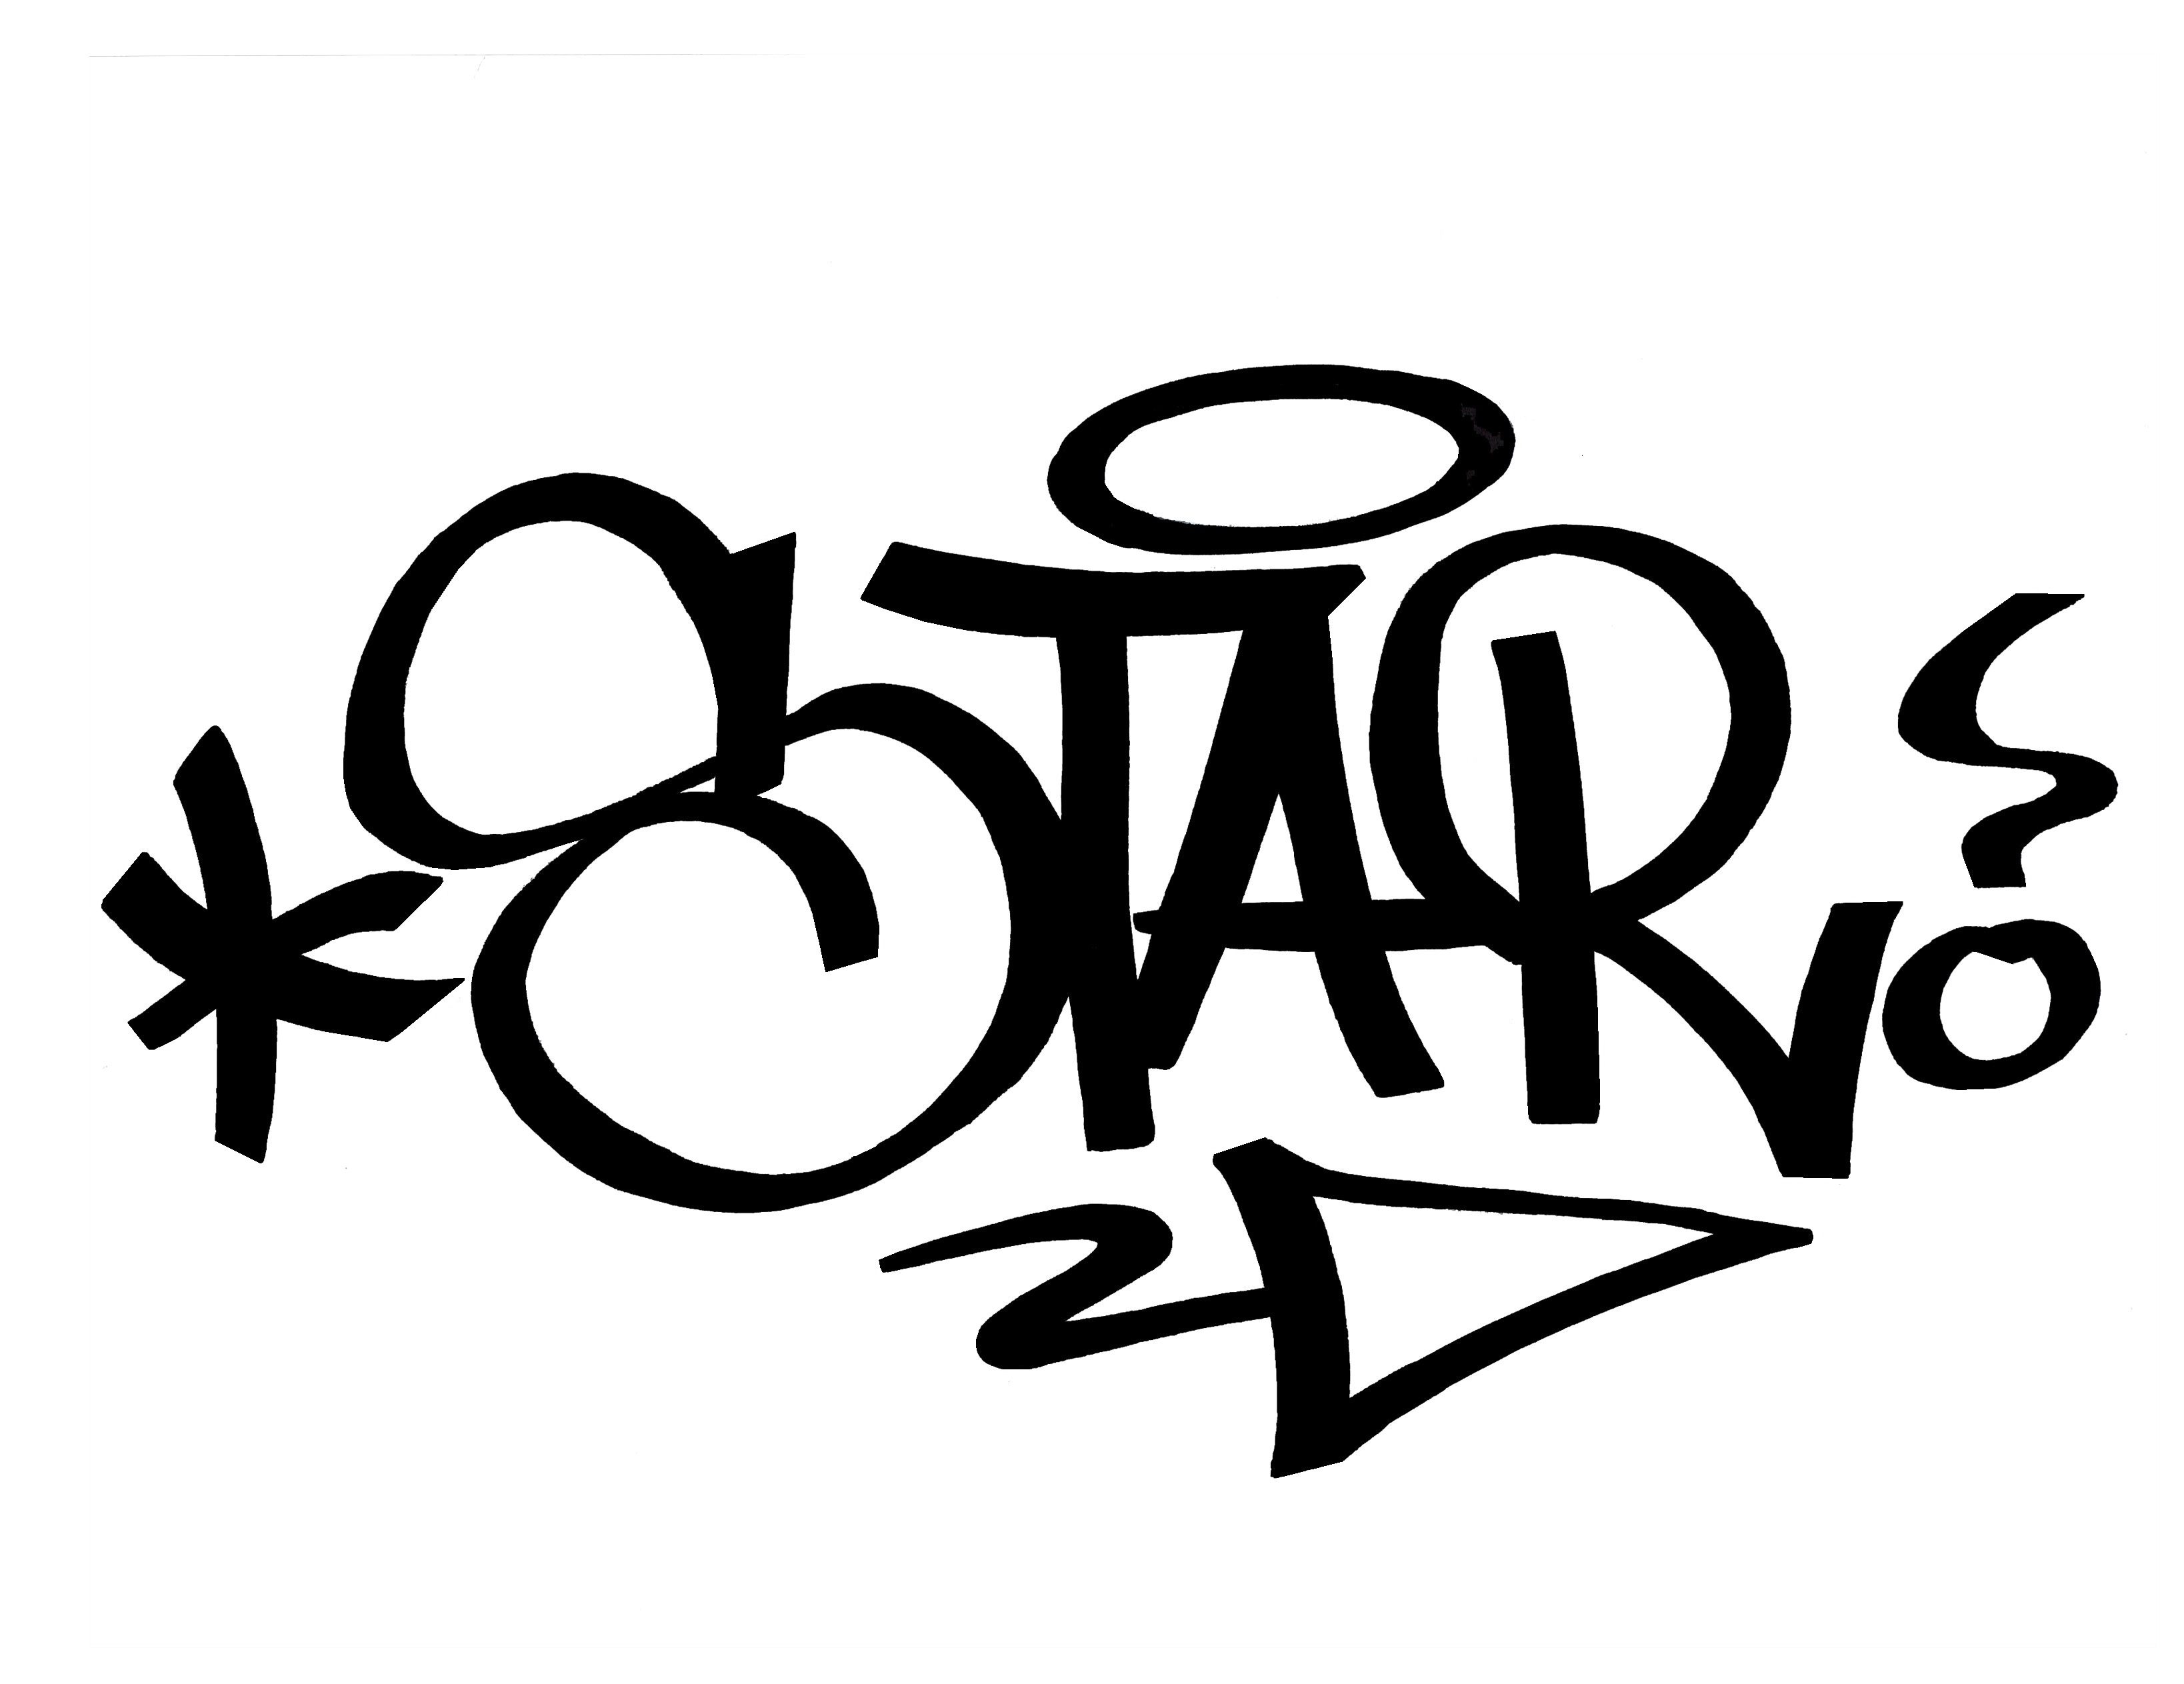 graffiti stars drawings